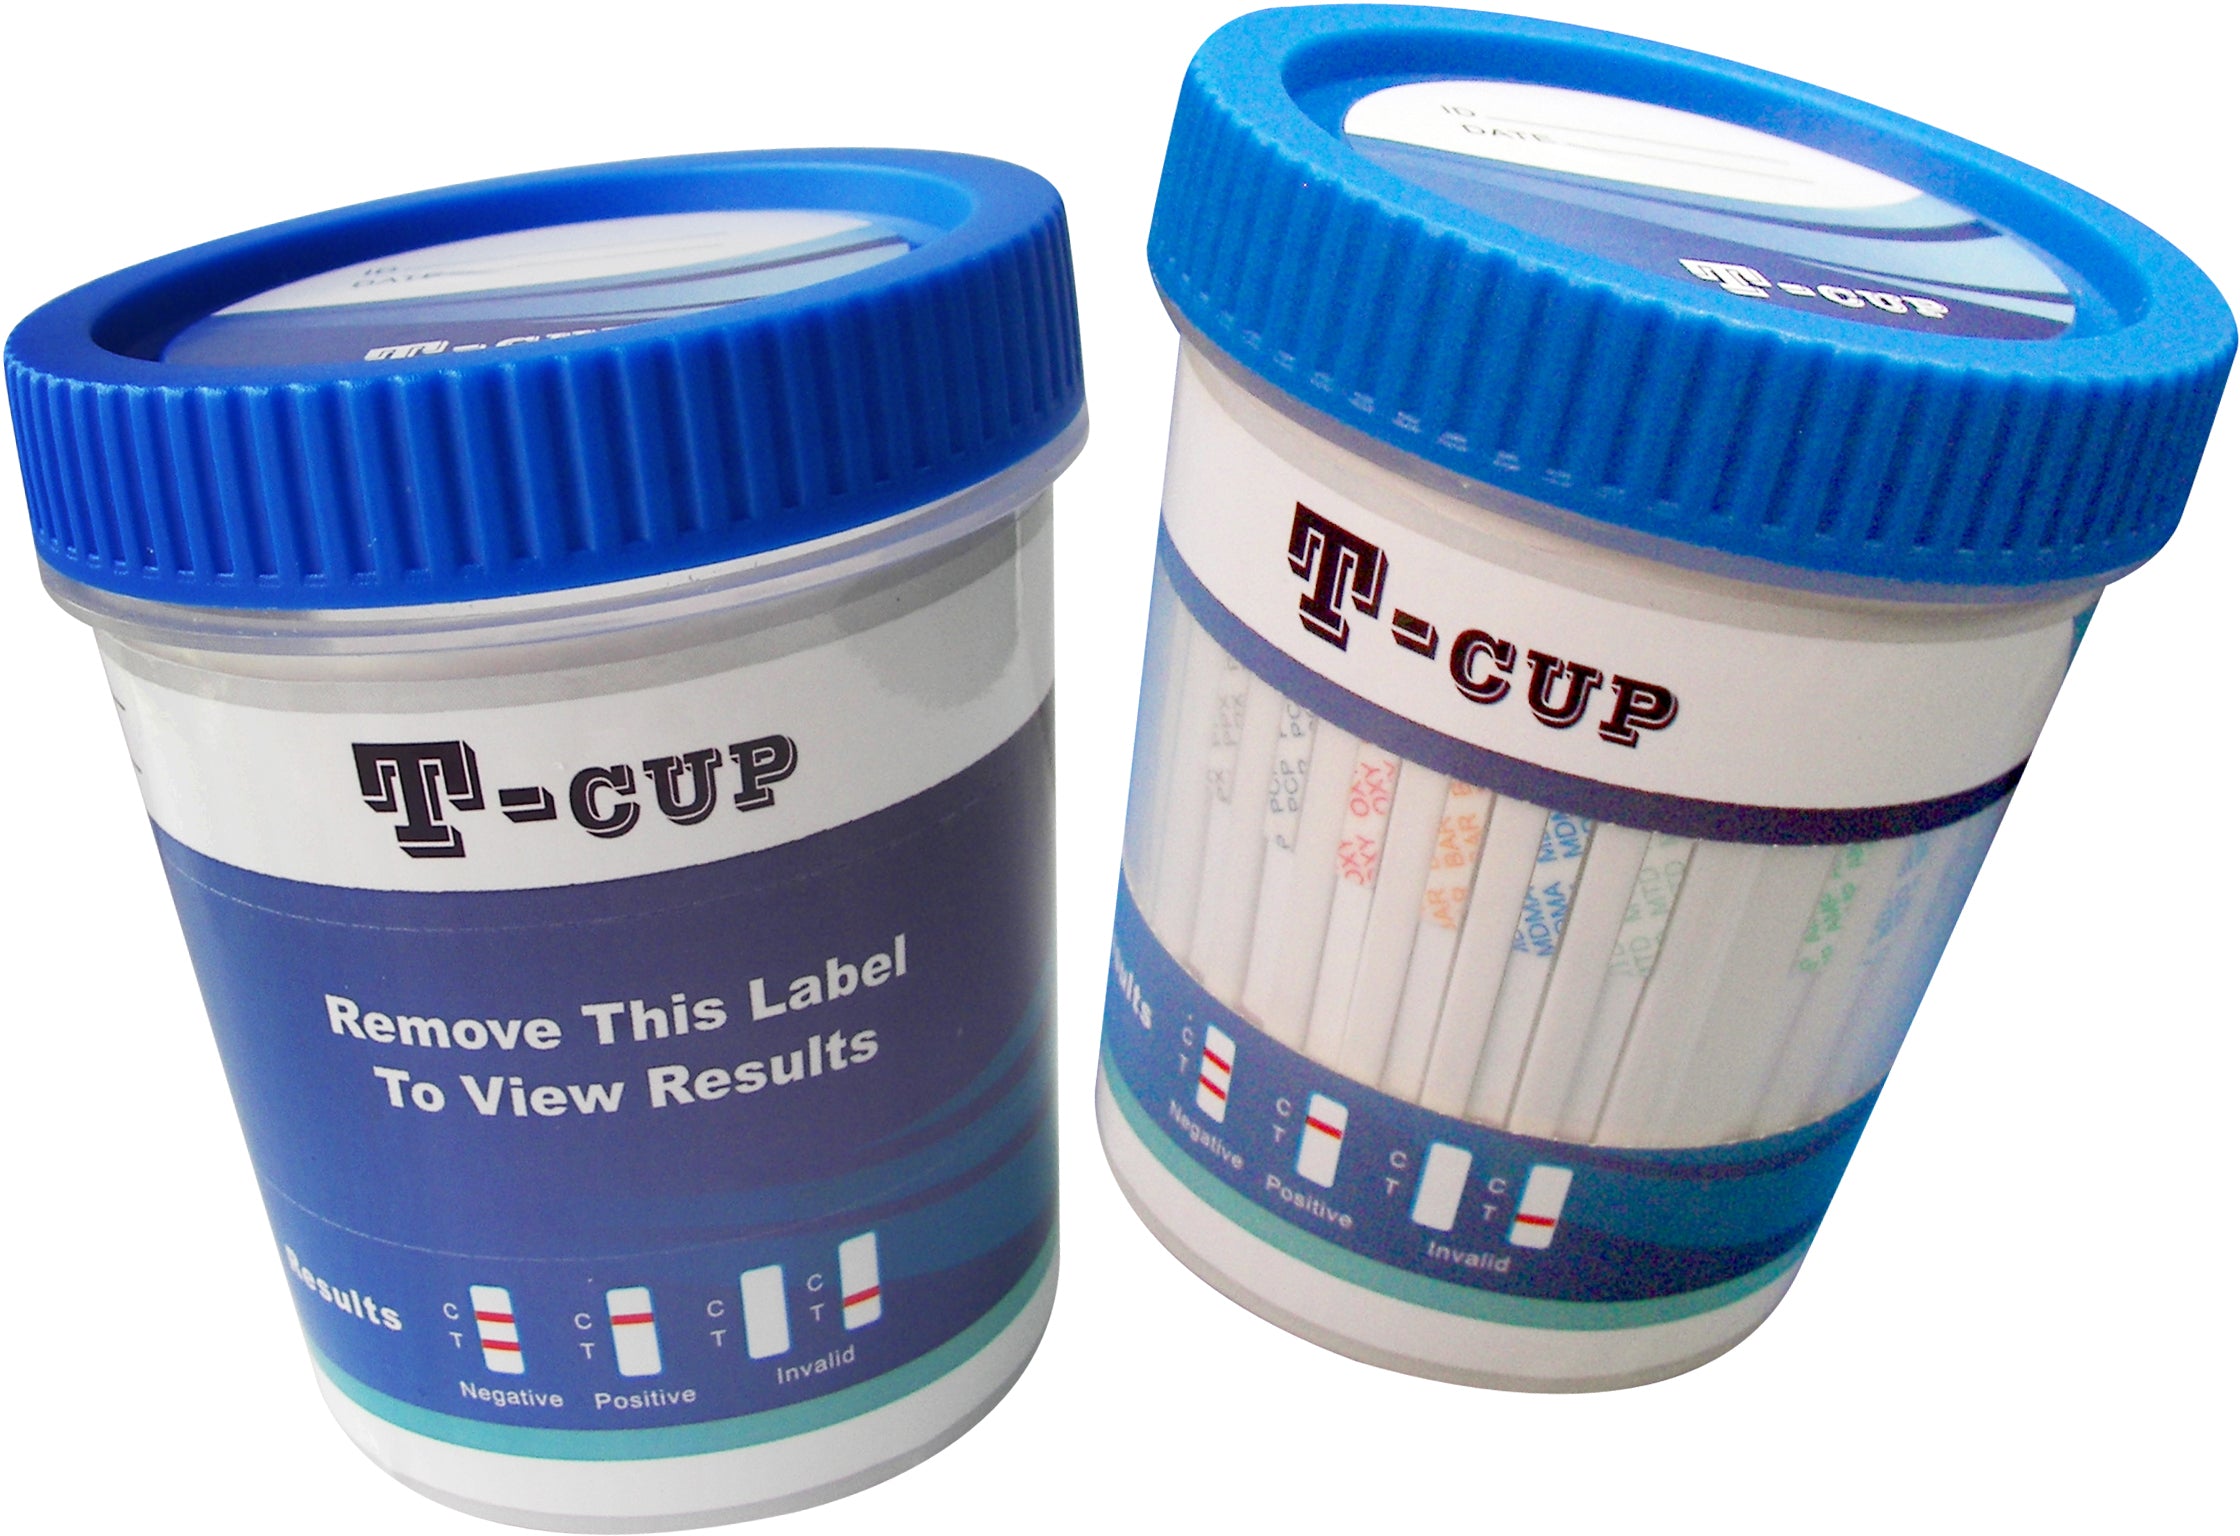 T-Cup Drug Test